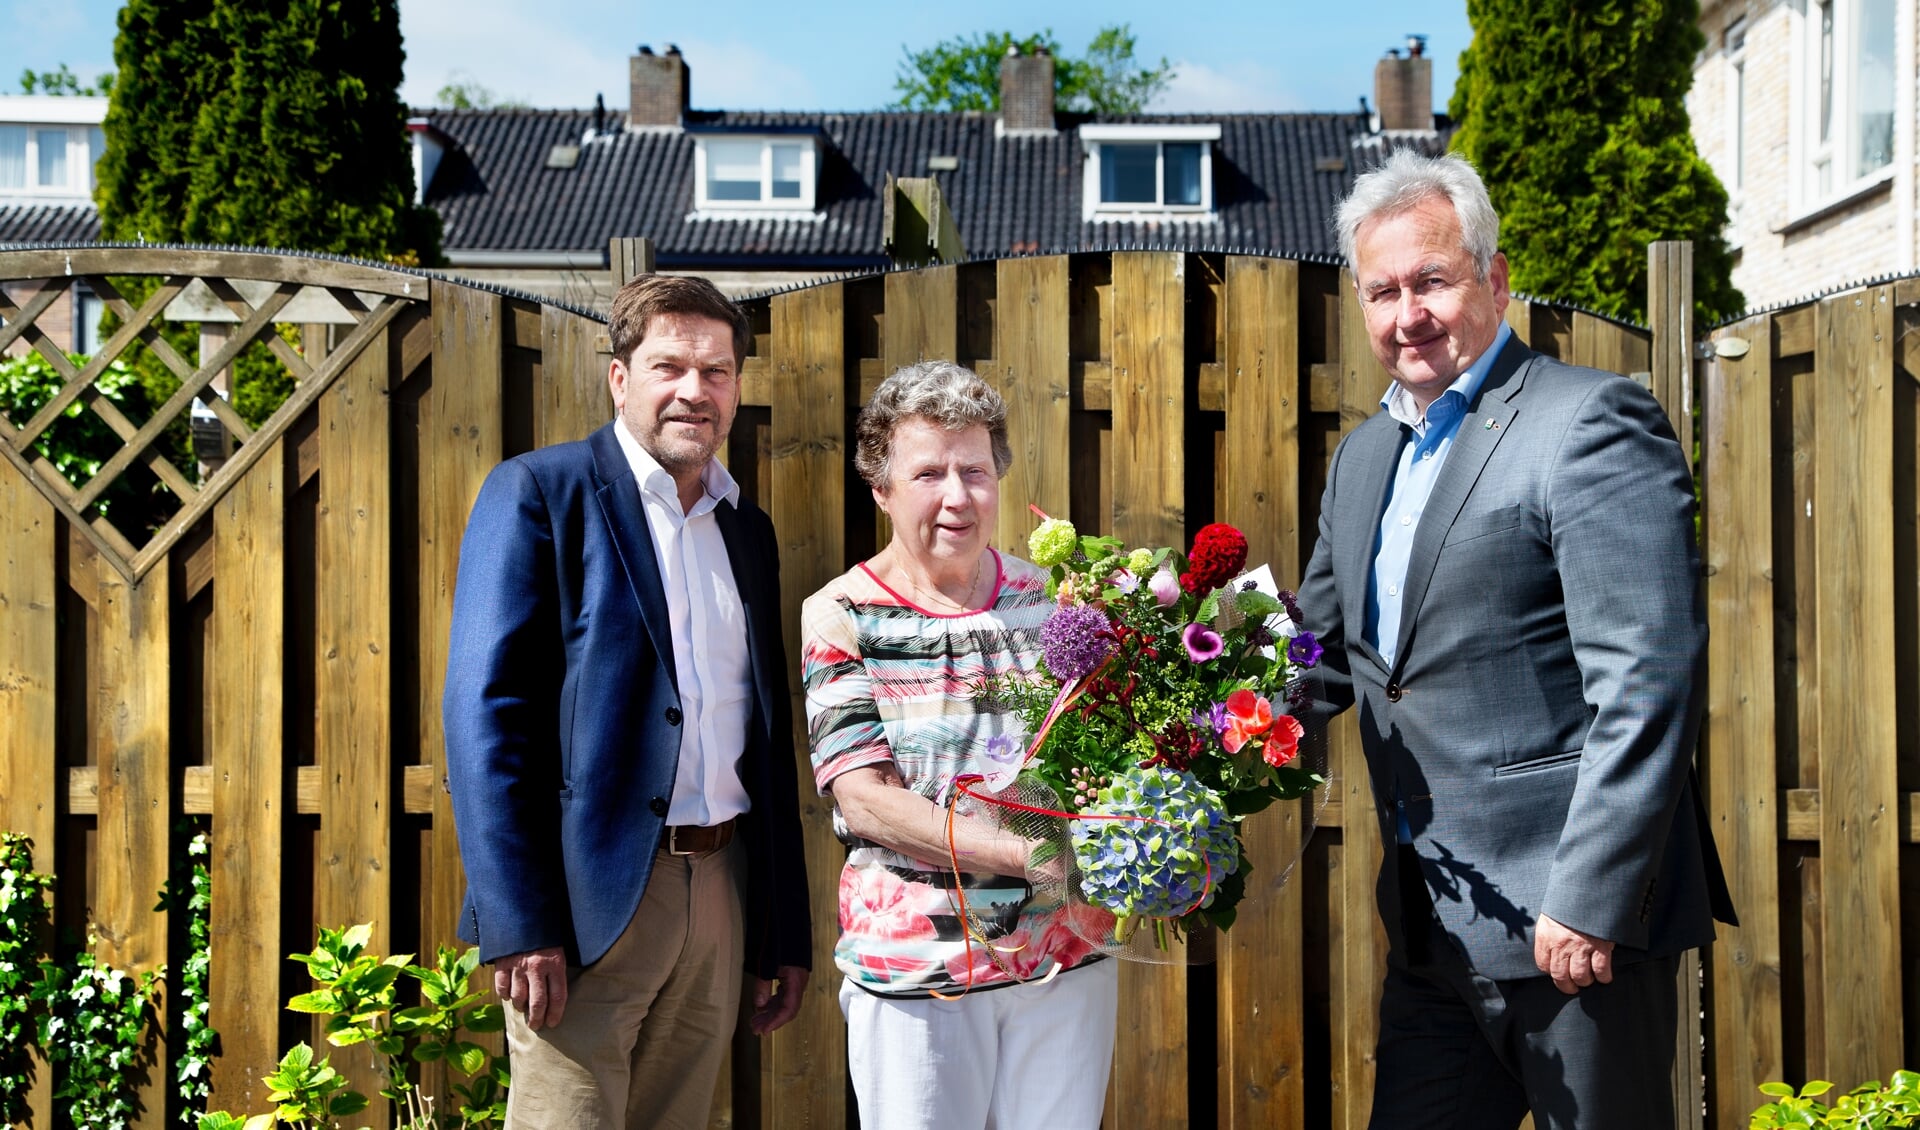 Wethouder Ben van der Stee (r.) en Wilfried Stribos (l.) op bezoek bij mevrouw Voogd in de Oranjebuurt.